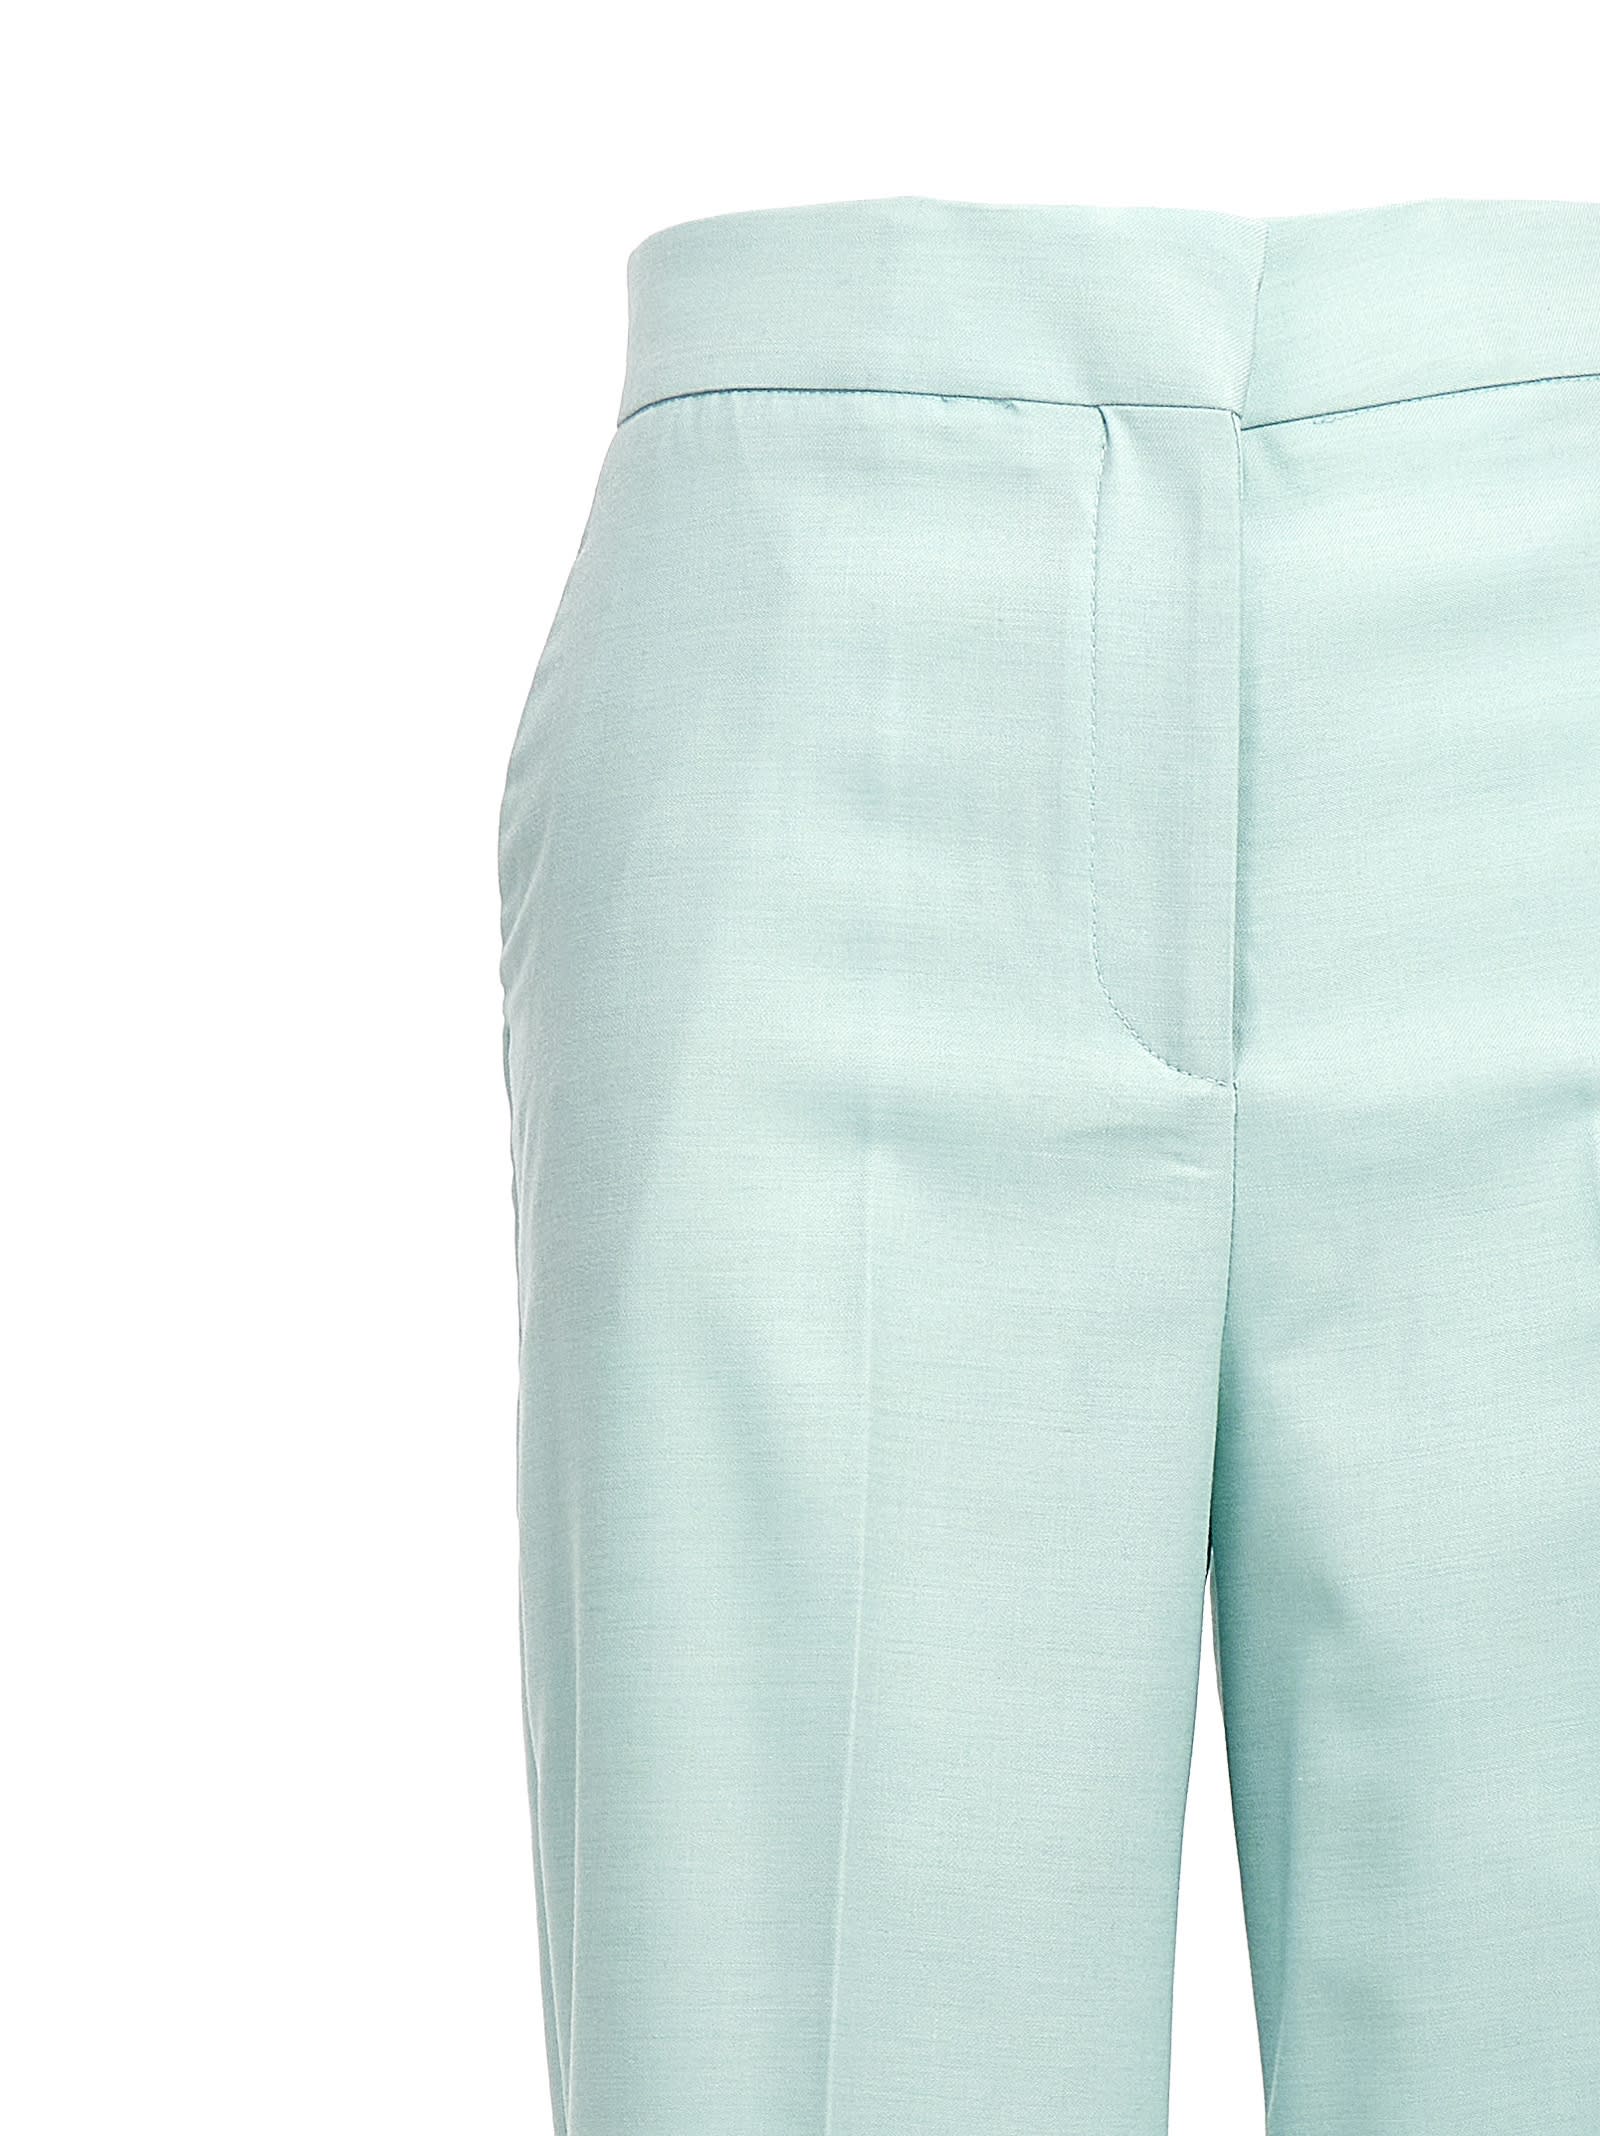 Shop Mvp Wardrobe Walbody Pants In Light Blue